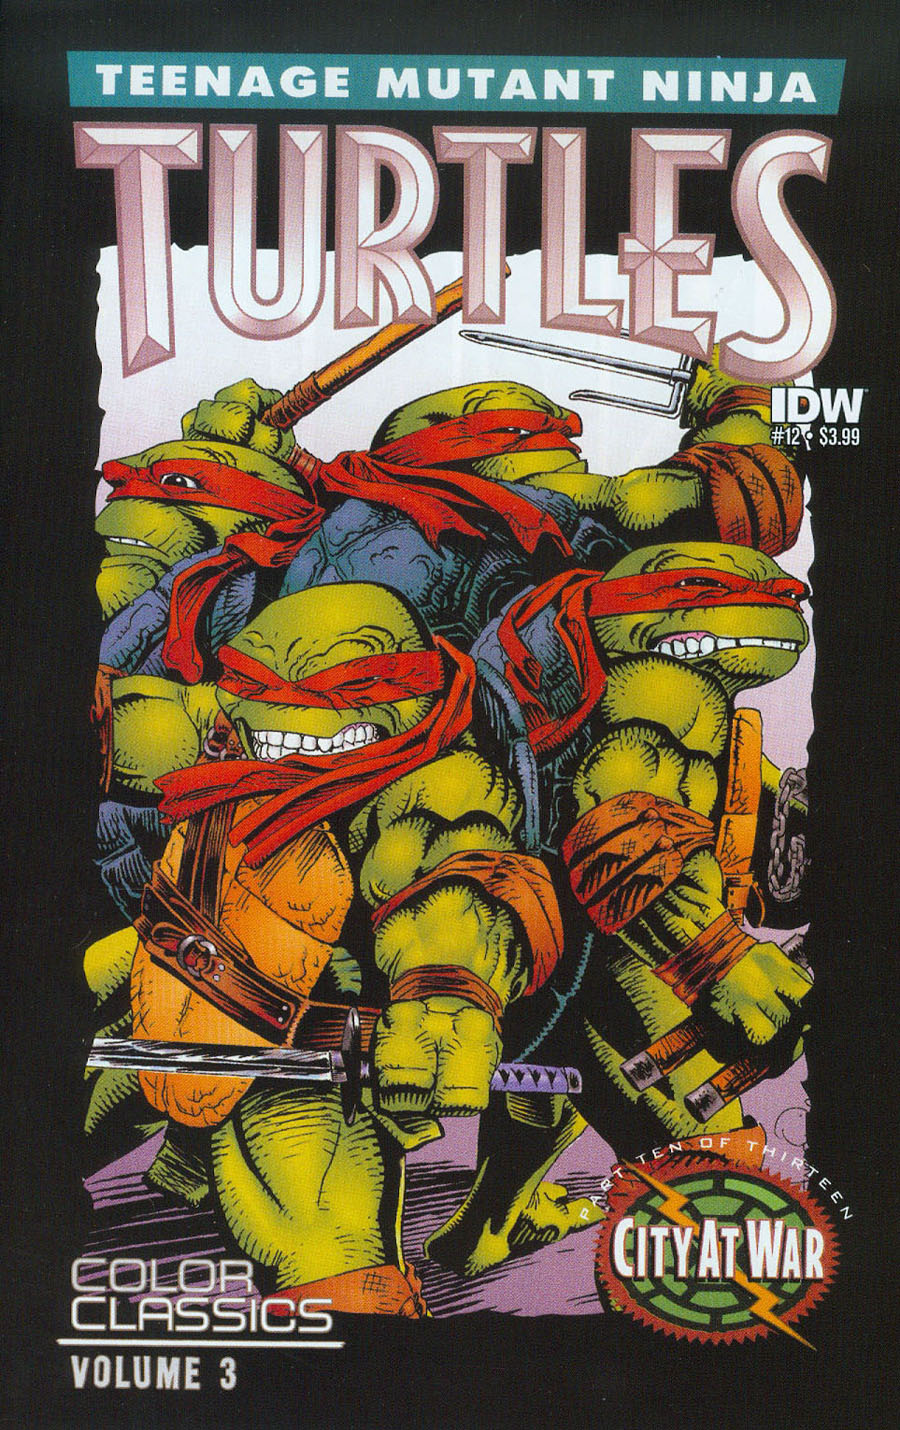 Teenage Mutant Ninja Turtles Color Classics Vol 3 #12